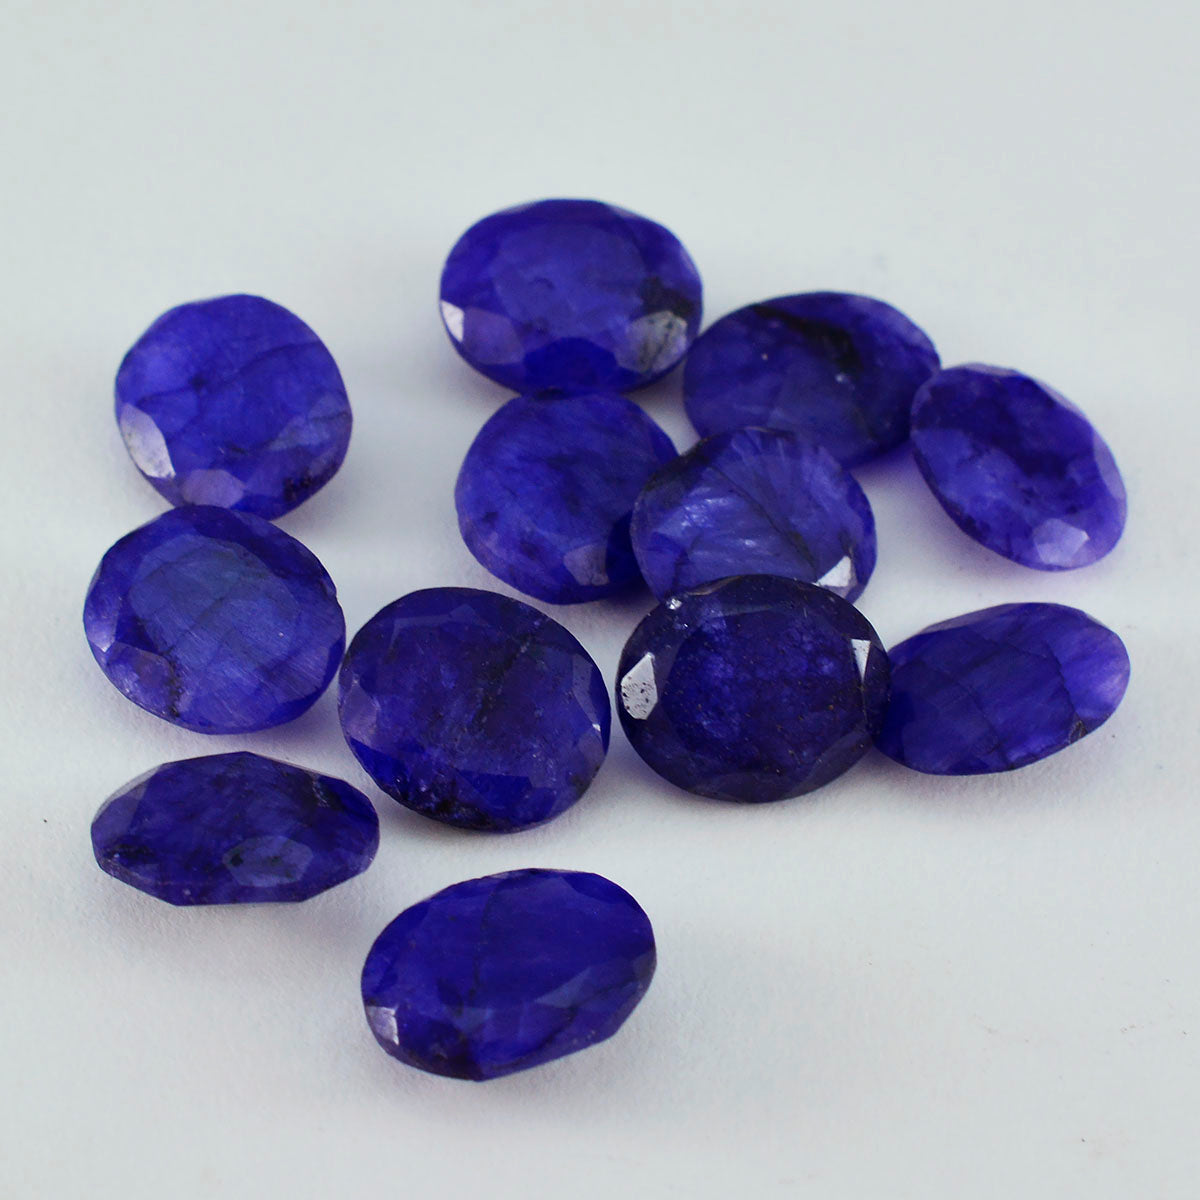 riyogems 1 шт. натуральная синяя яшма граненая 5x7 мм овальной формы хорошее качество свободный драгоценный камень